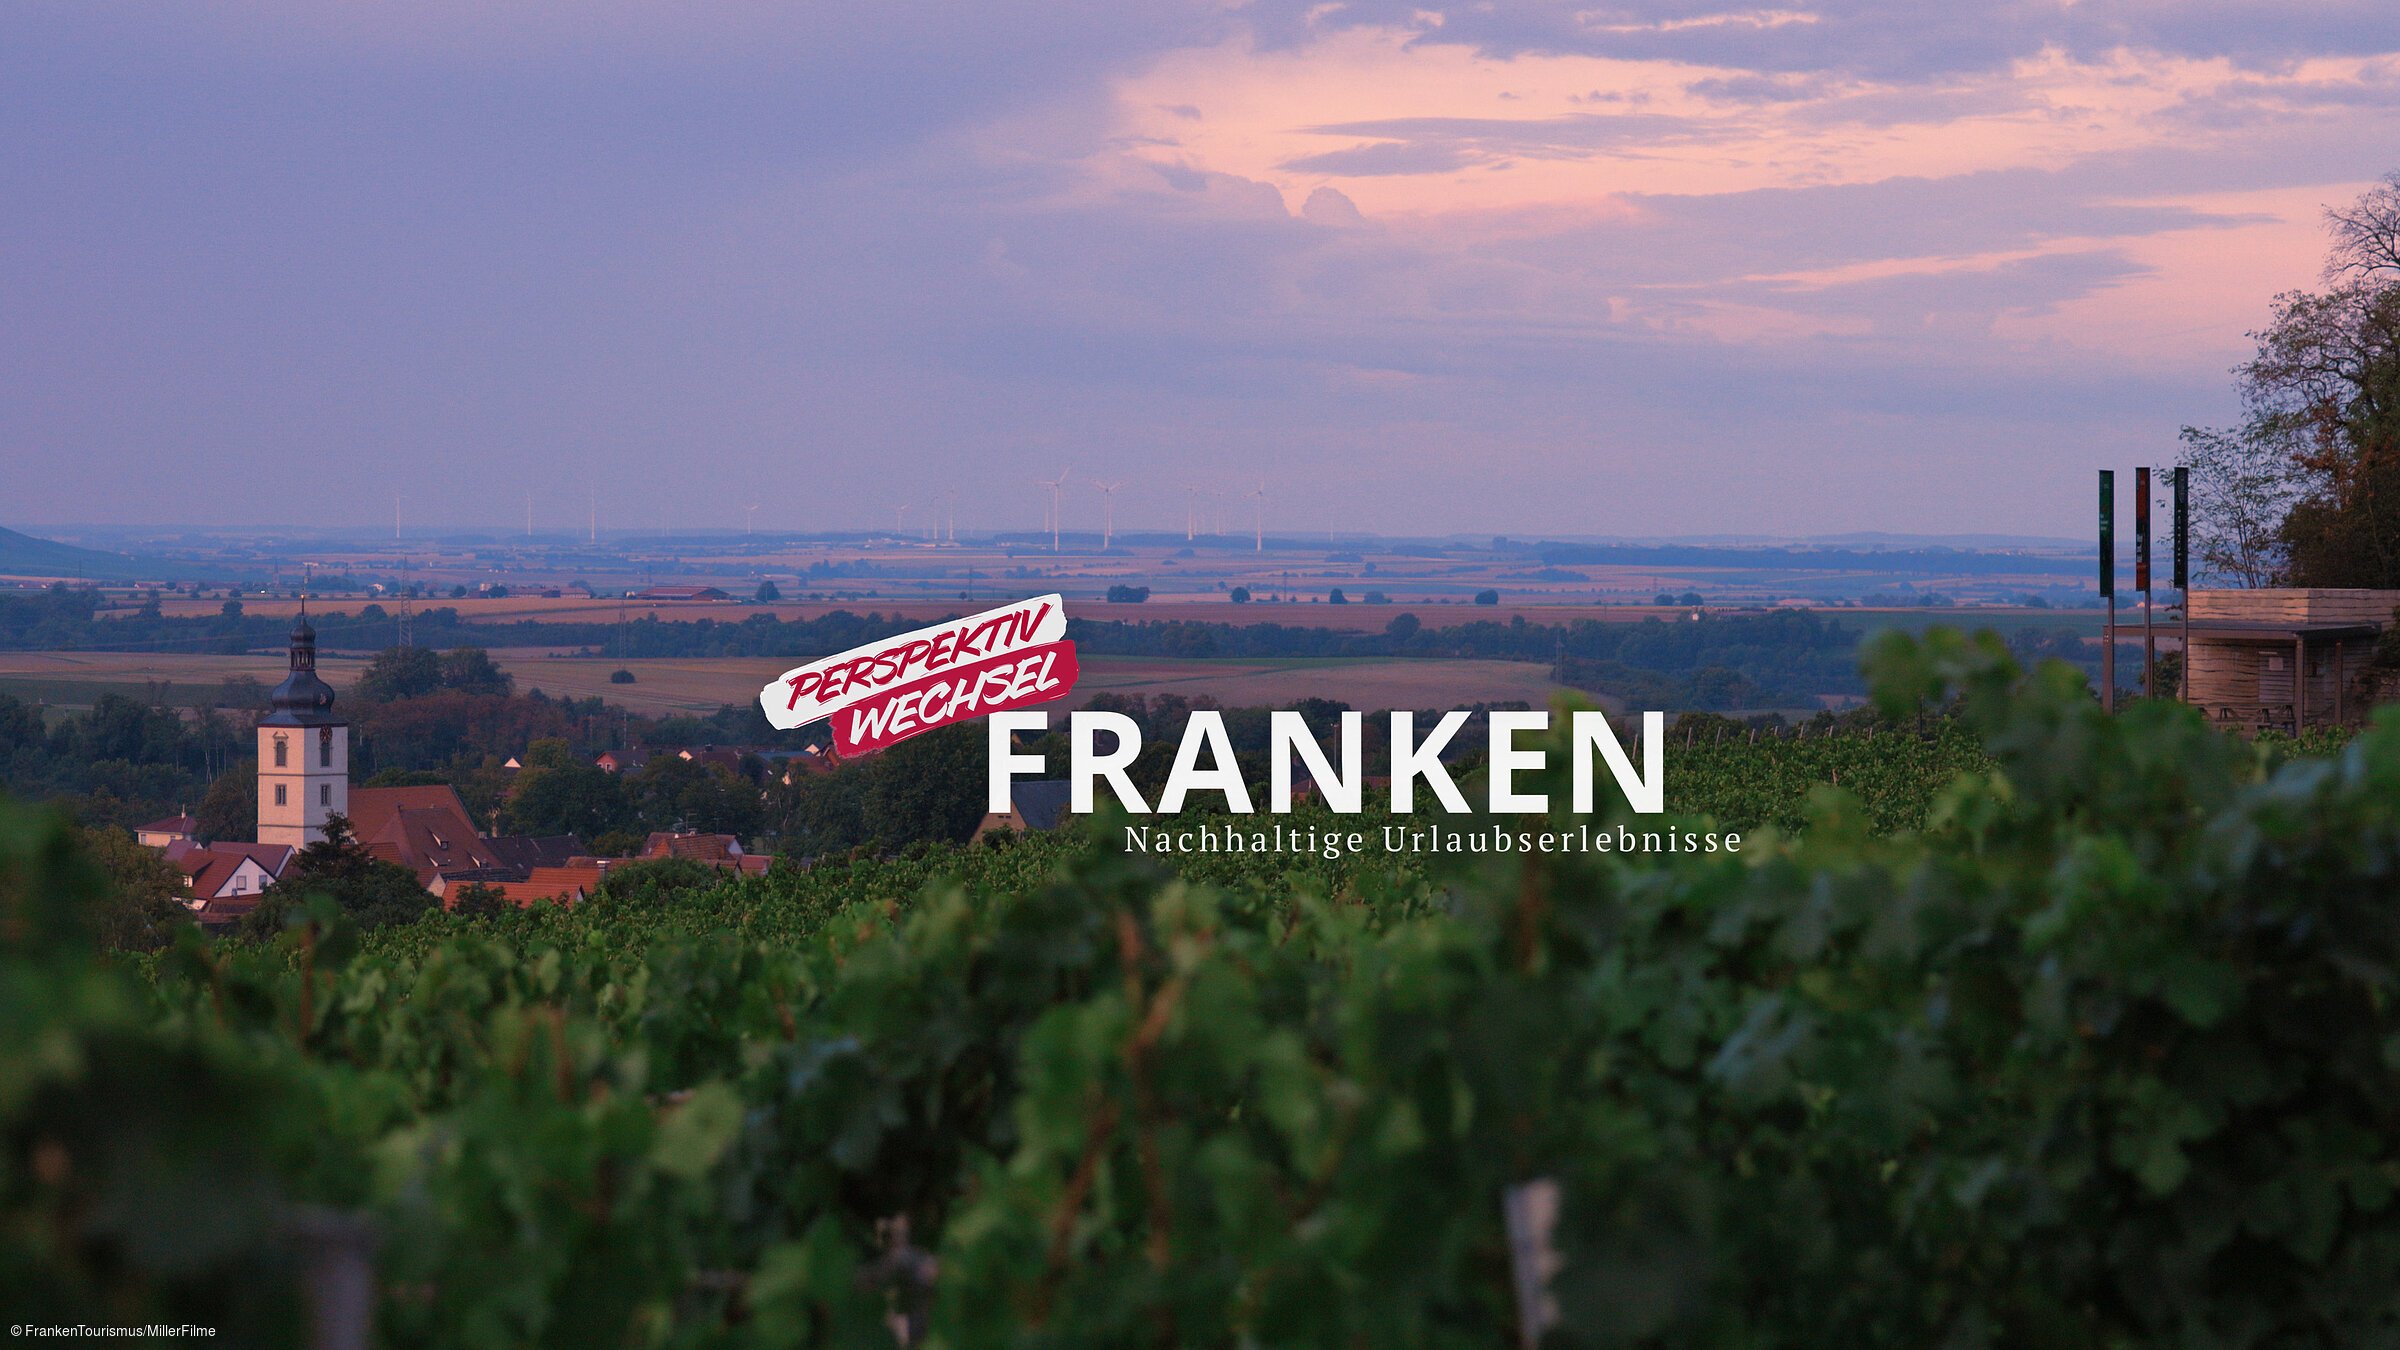 Nachhaltige Urlaubserlebnisse in Franken